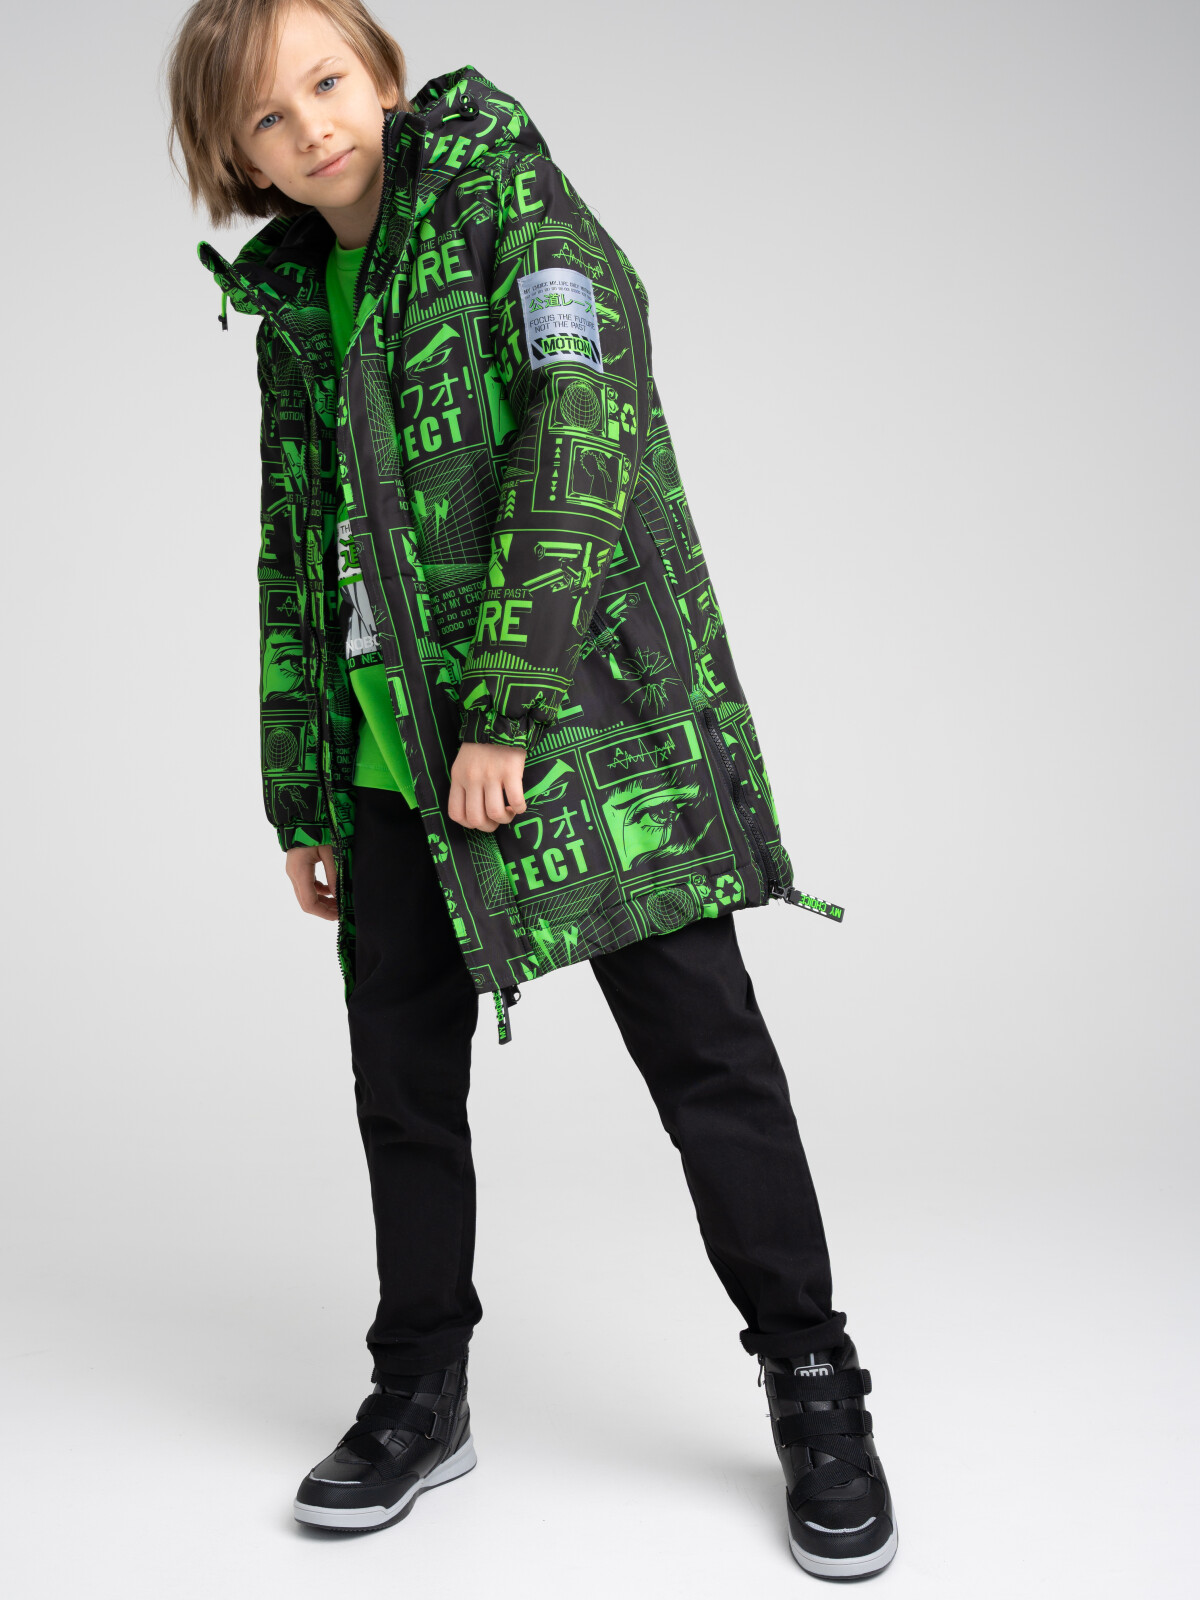 Куртка текстильная с полиуретановым покрытием для мальчиков PlayToday, цветной, 176